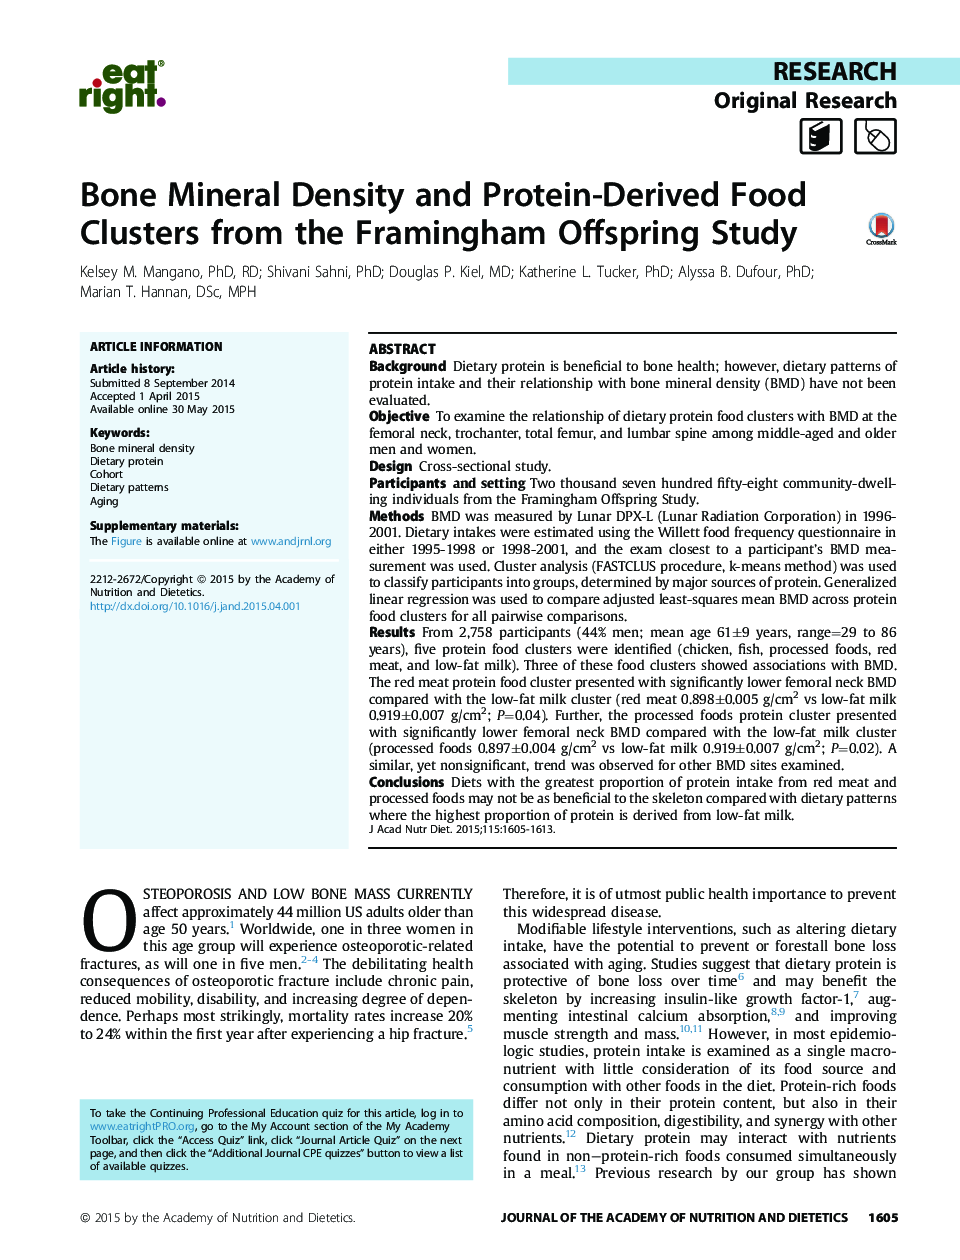 تراکم معدنی استخوان و خوشه های غذایی پروتئینی حاصل از مطالعه فرزندان فریمینگام 